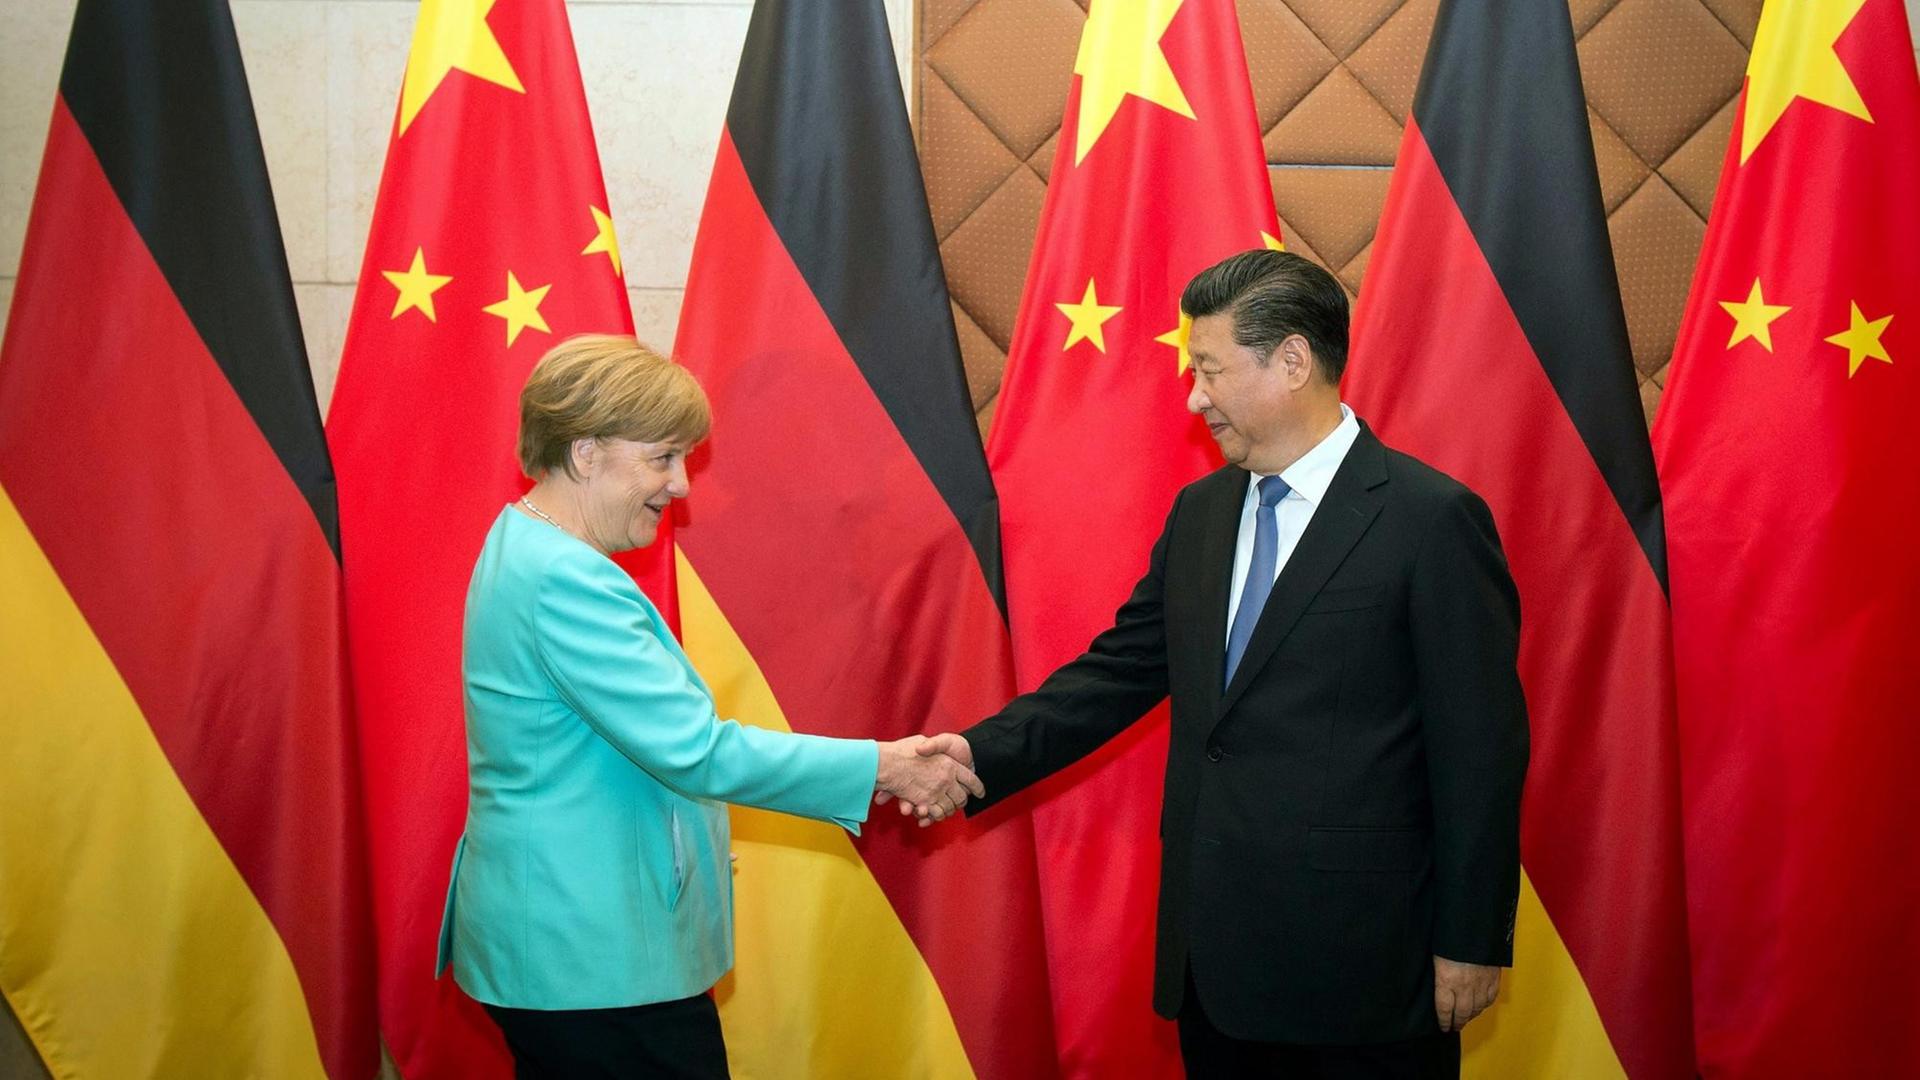 Bundeskanzlerin Angela Merkel und Chinas Präsident Xi Jinping schütteln sich vor den Flaggen ihrer Länder stehend die Hände.